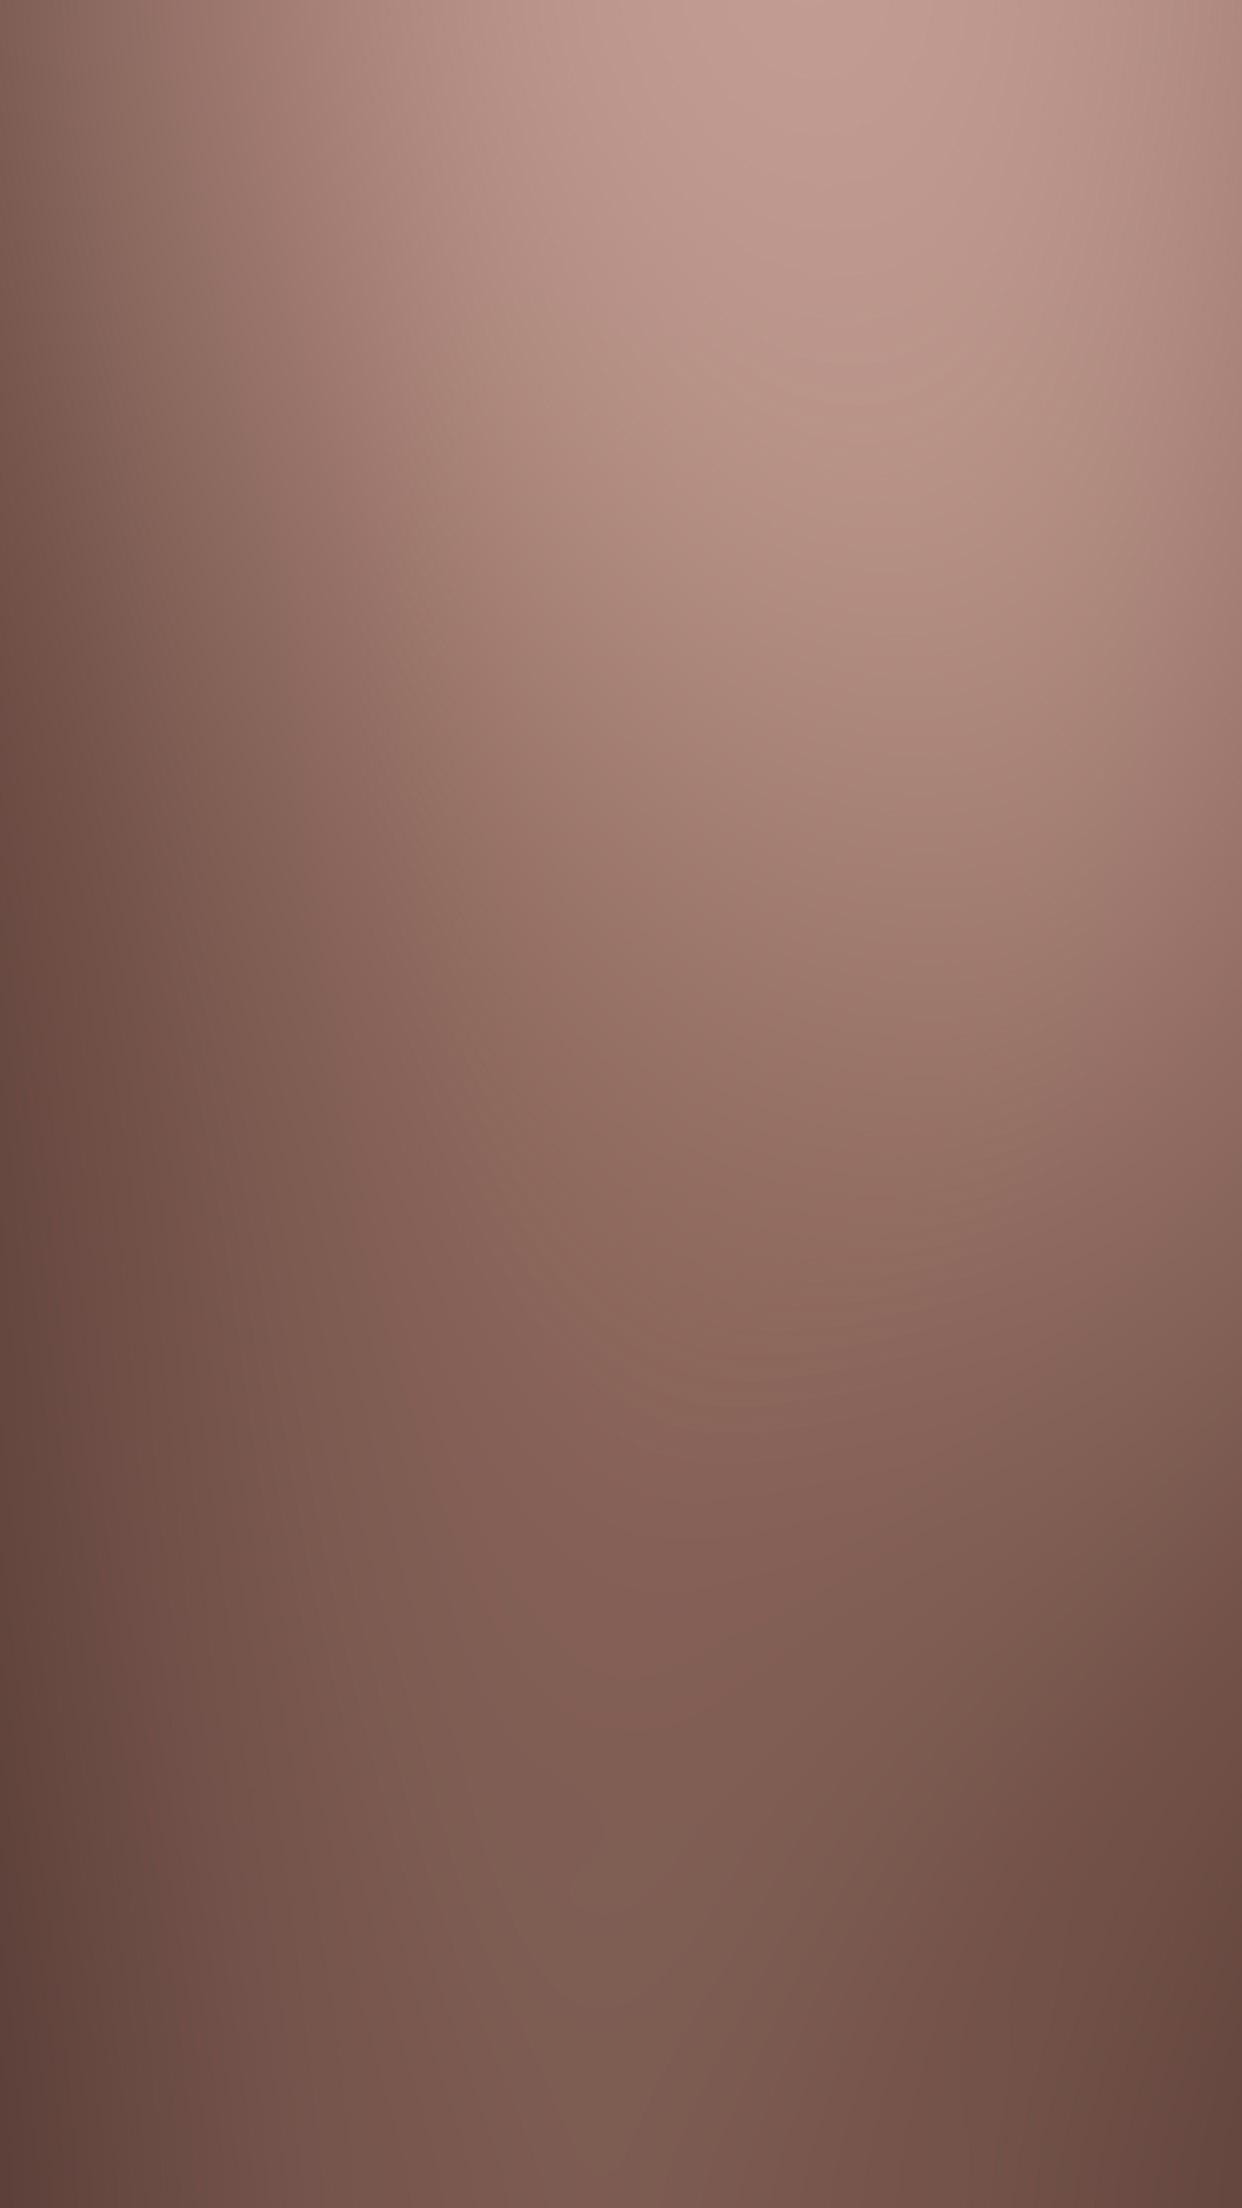 Beige IPhone wallpaper  Ipad hintergrund Hintergrund iphone Pastell  hintergrund